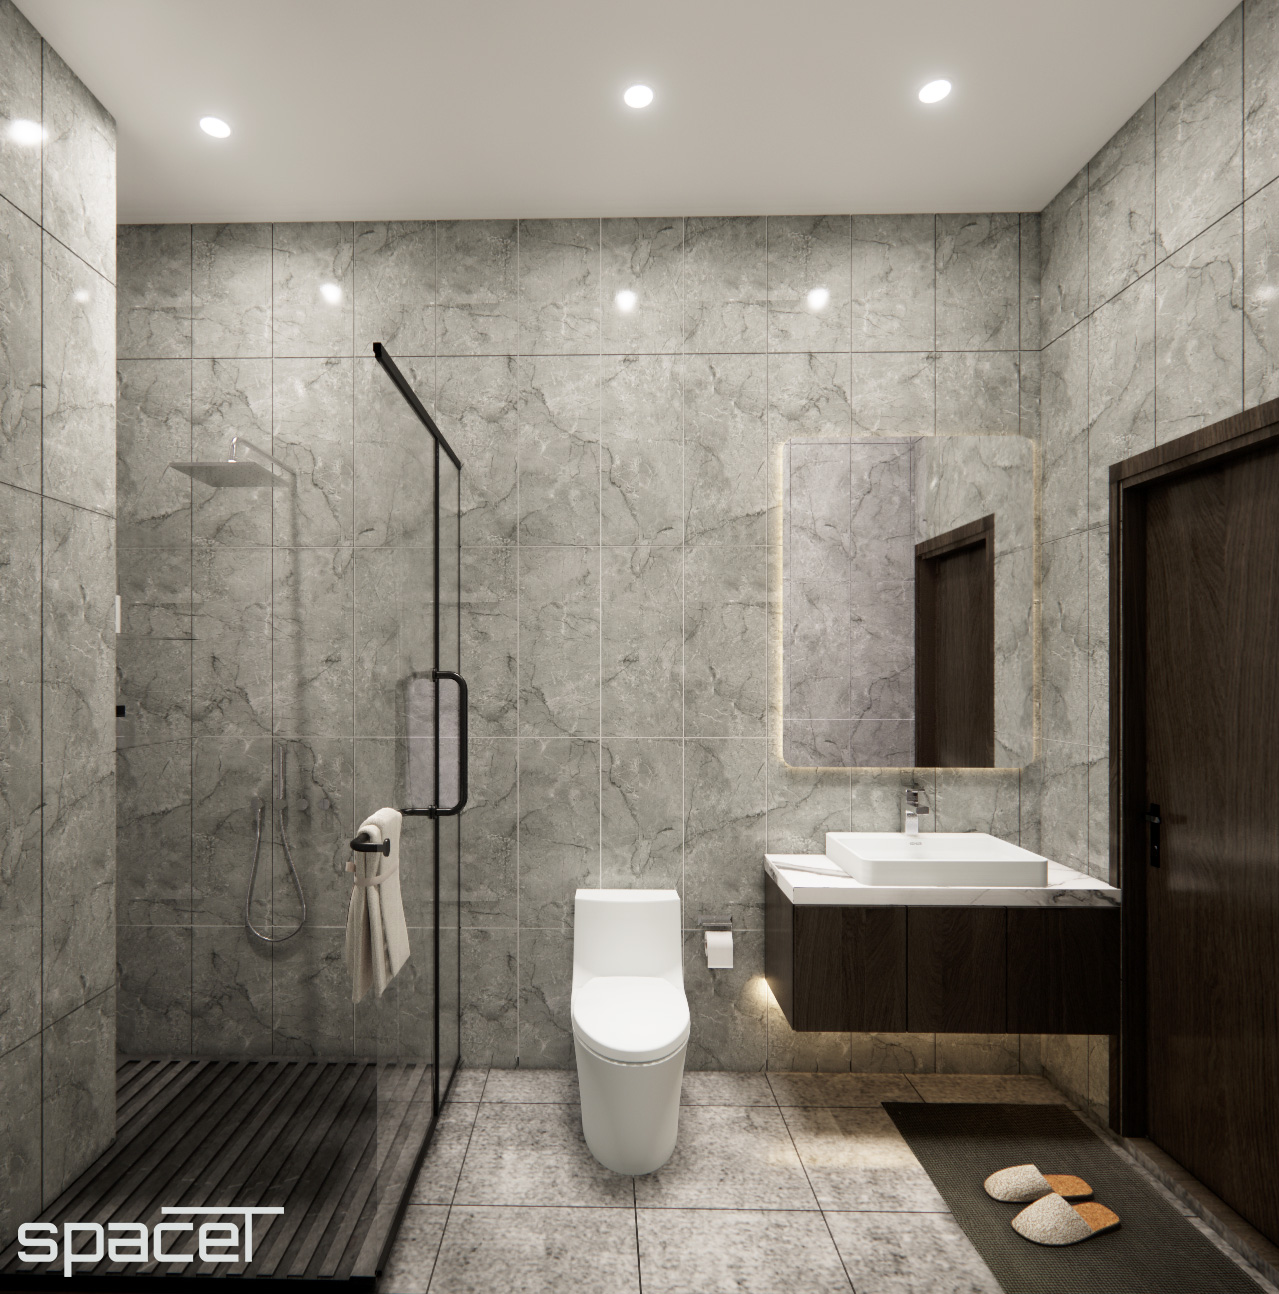 Phòng tắm, phong cách Hiện đại Modern, thiết kế concept nội thất, nhà phố quận Bình Thạnh